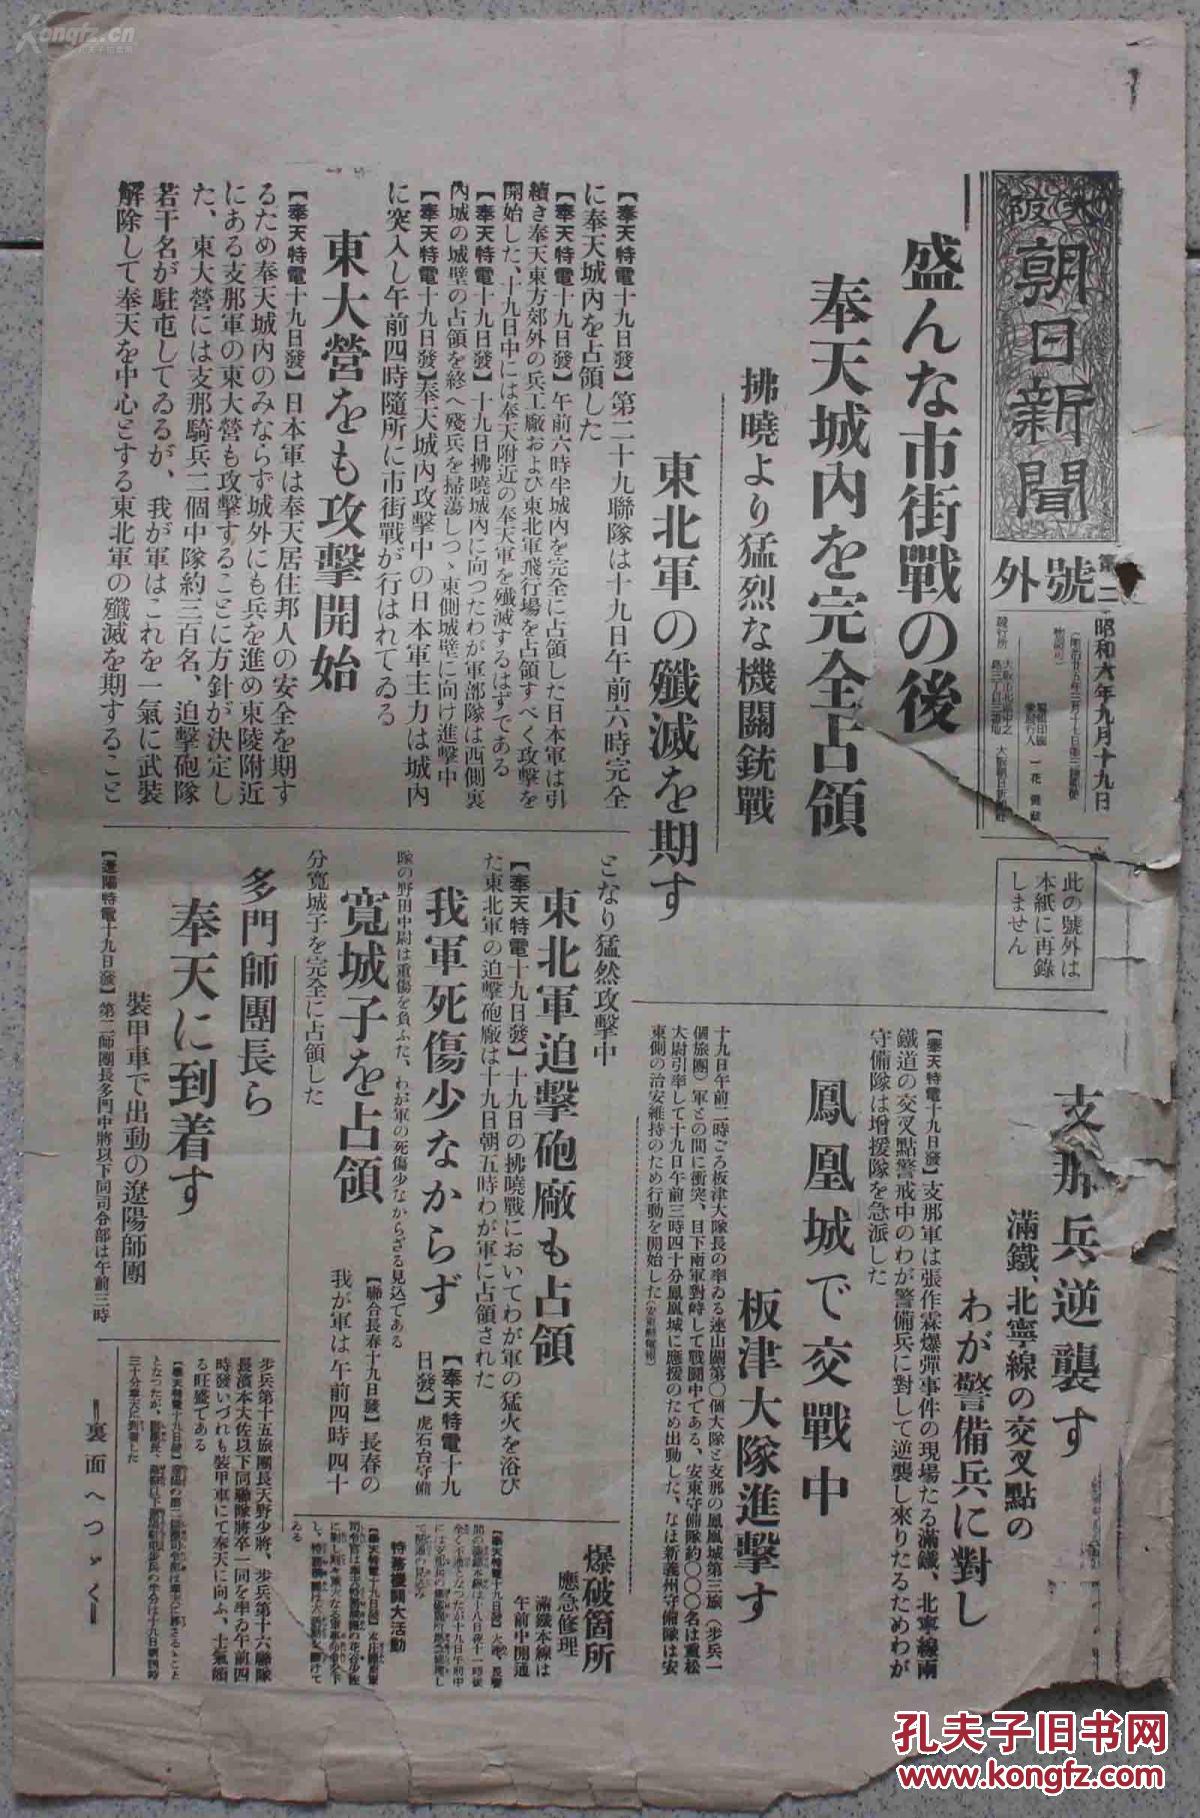 【图】侵华史料:大阪朝日新闻号外(1931年9月